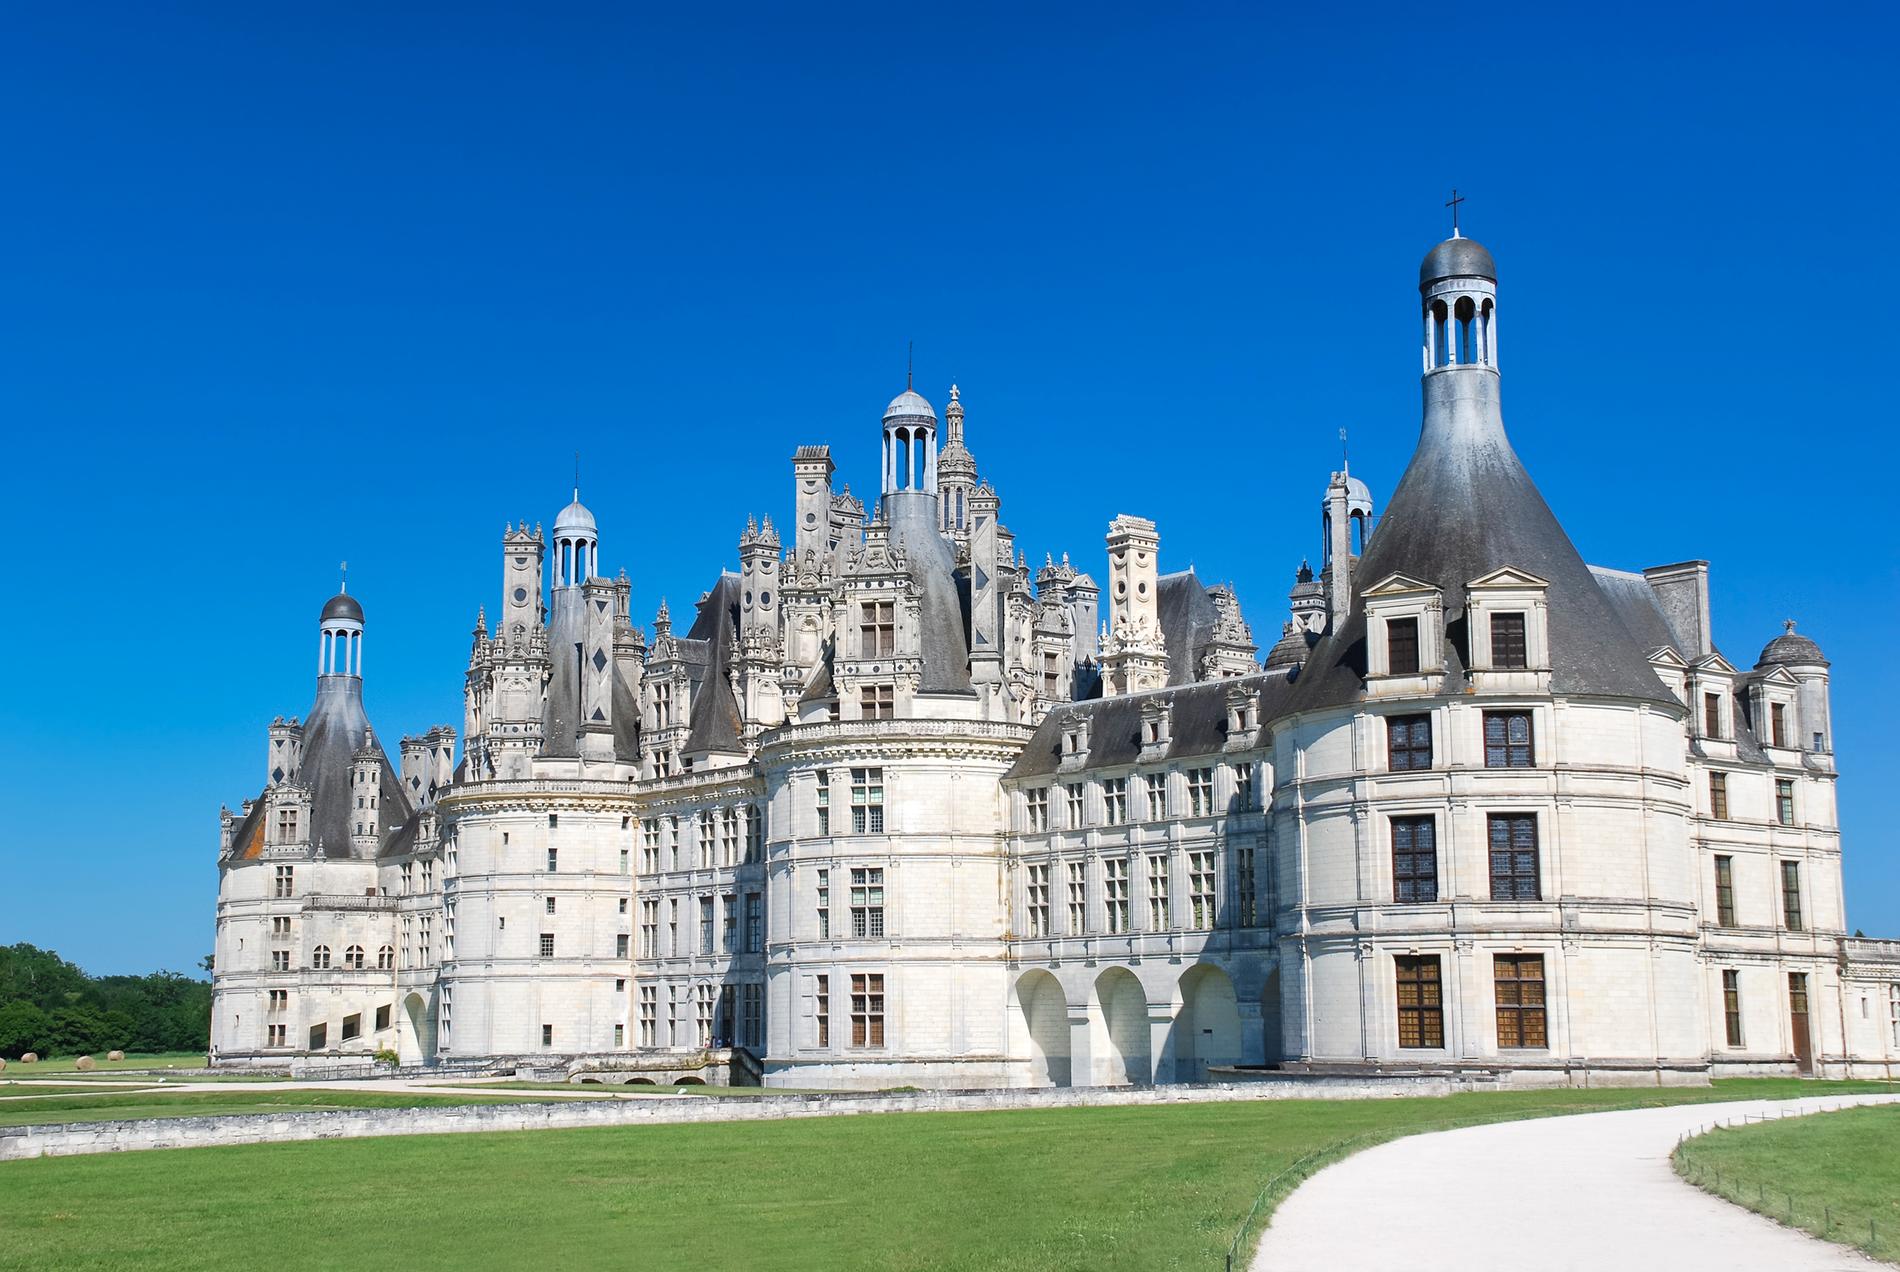 Chateau de Chambord, Frankrike. Åka hit: Flyg till Paris. Tåg 1,5 timme till Blois som ligger 16 km från slottet.